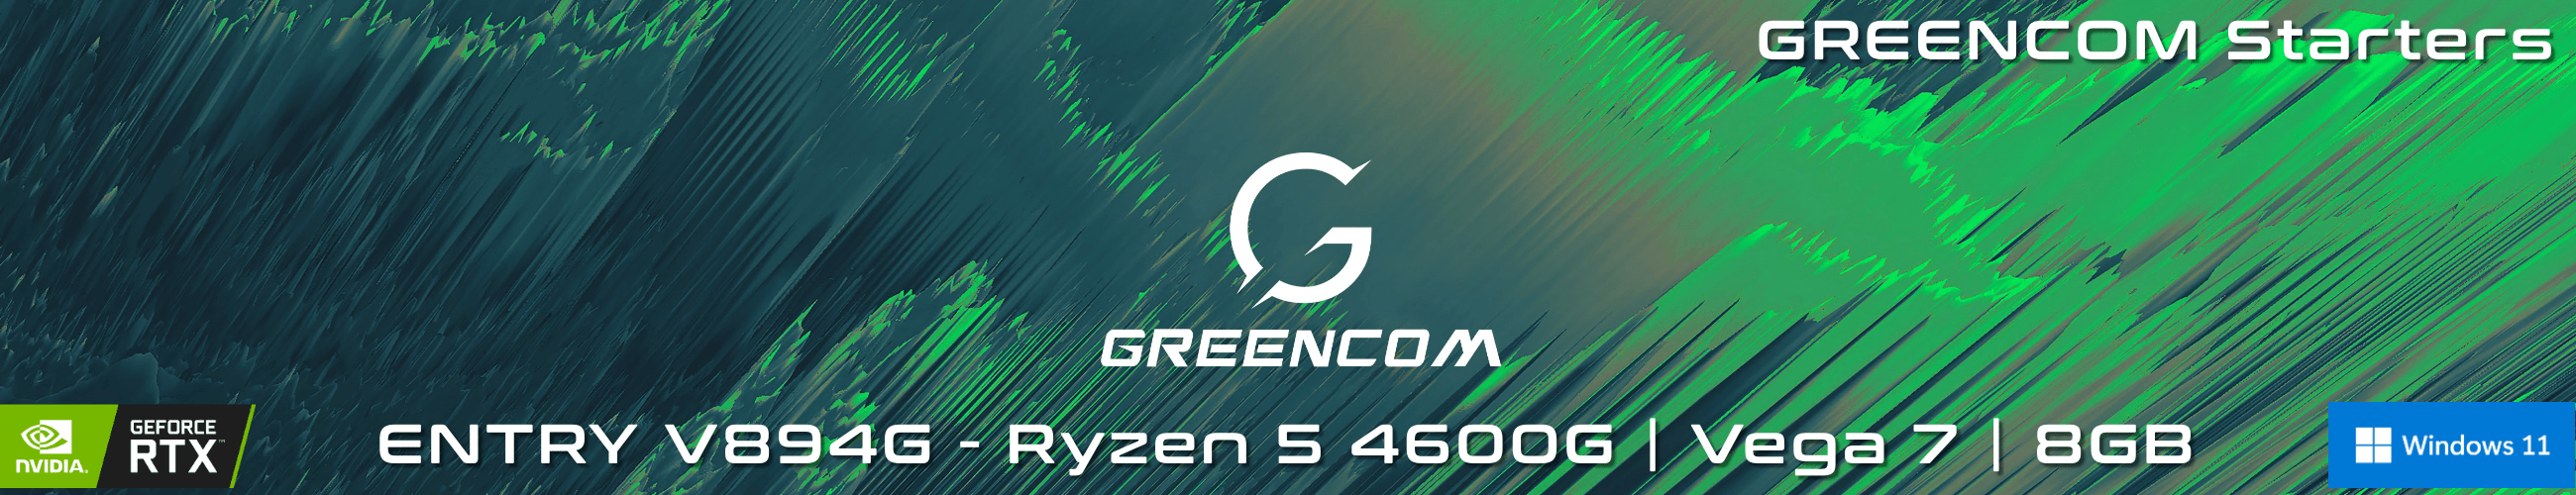 Greencom Entry V894G